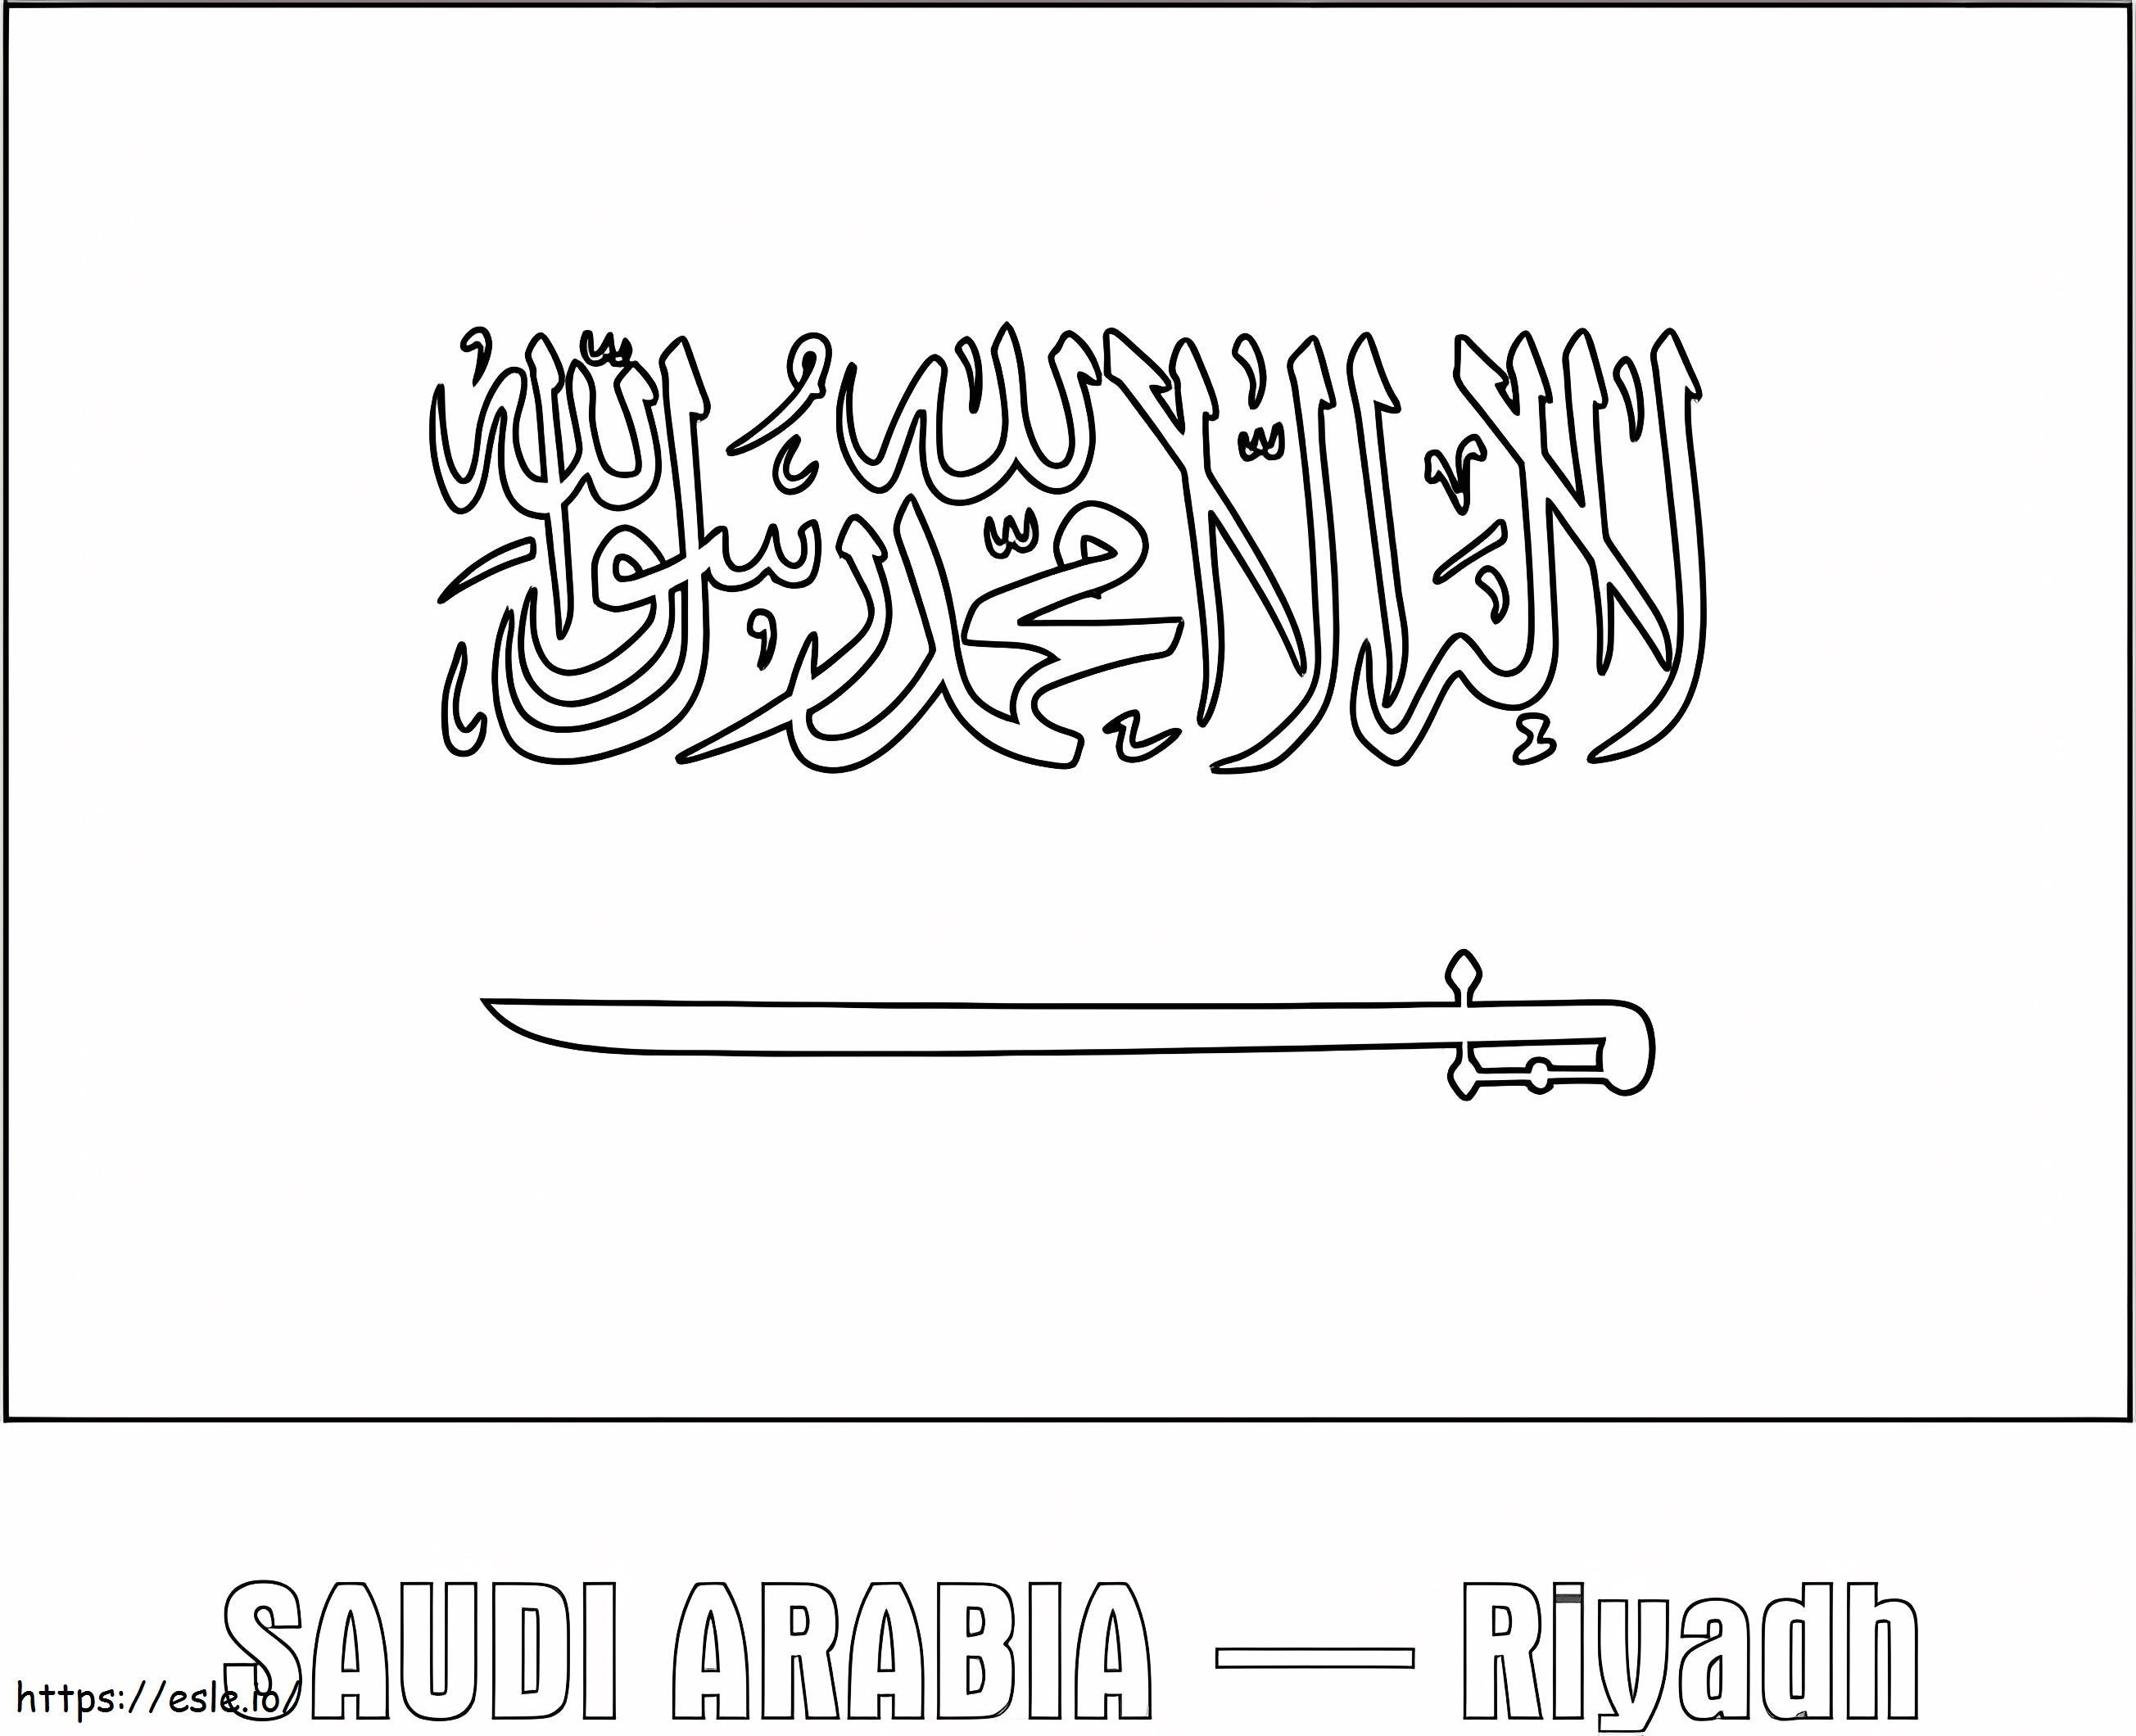 Steagul Arabiei Saudite 1 de colorat